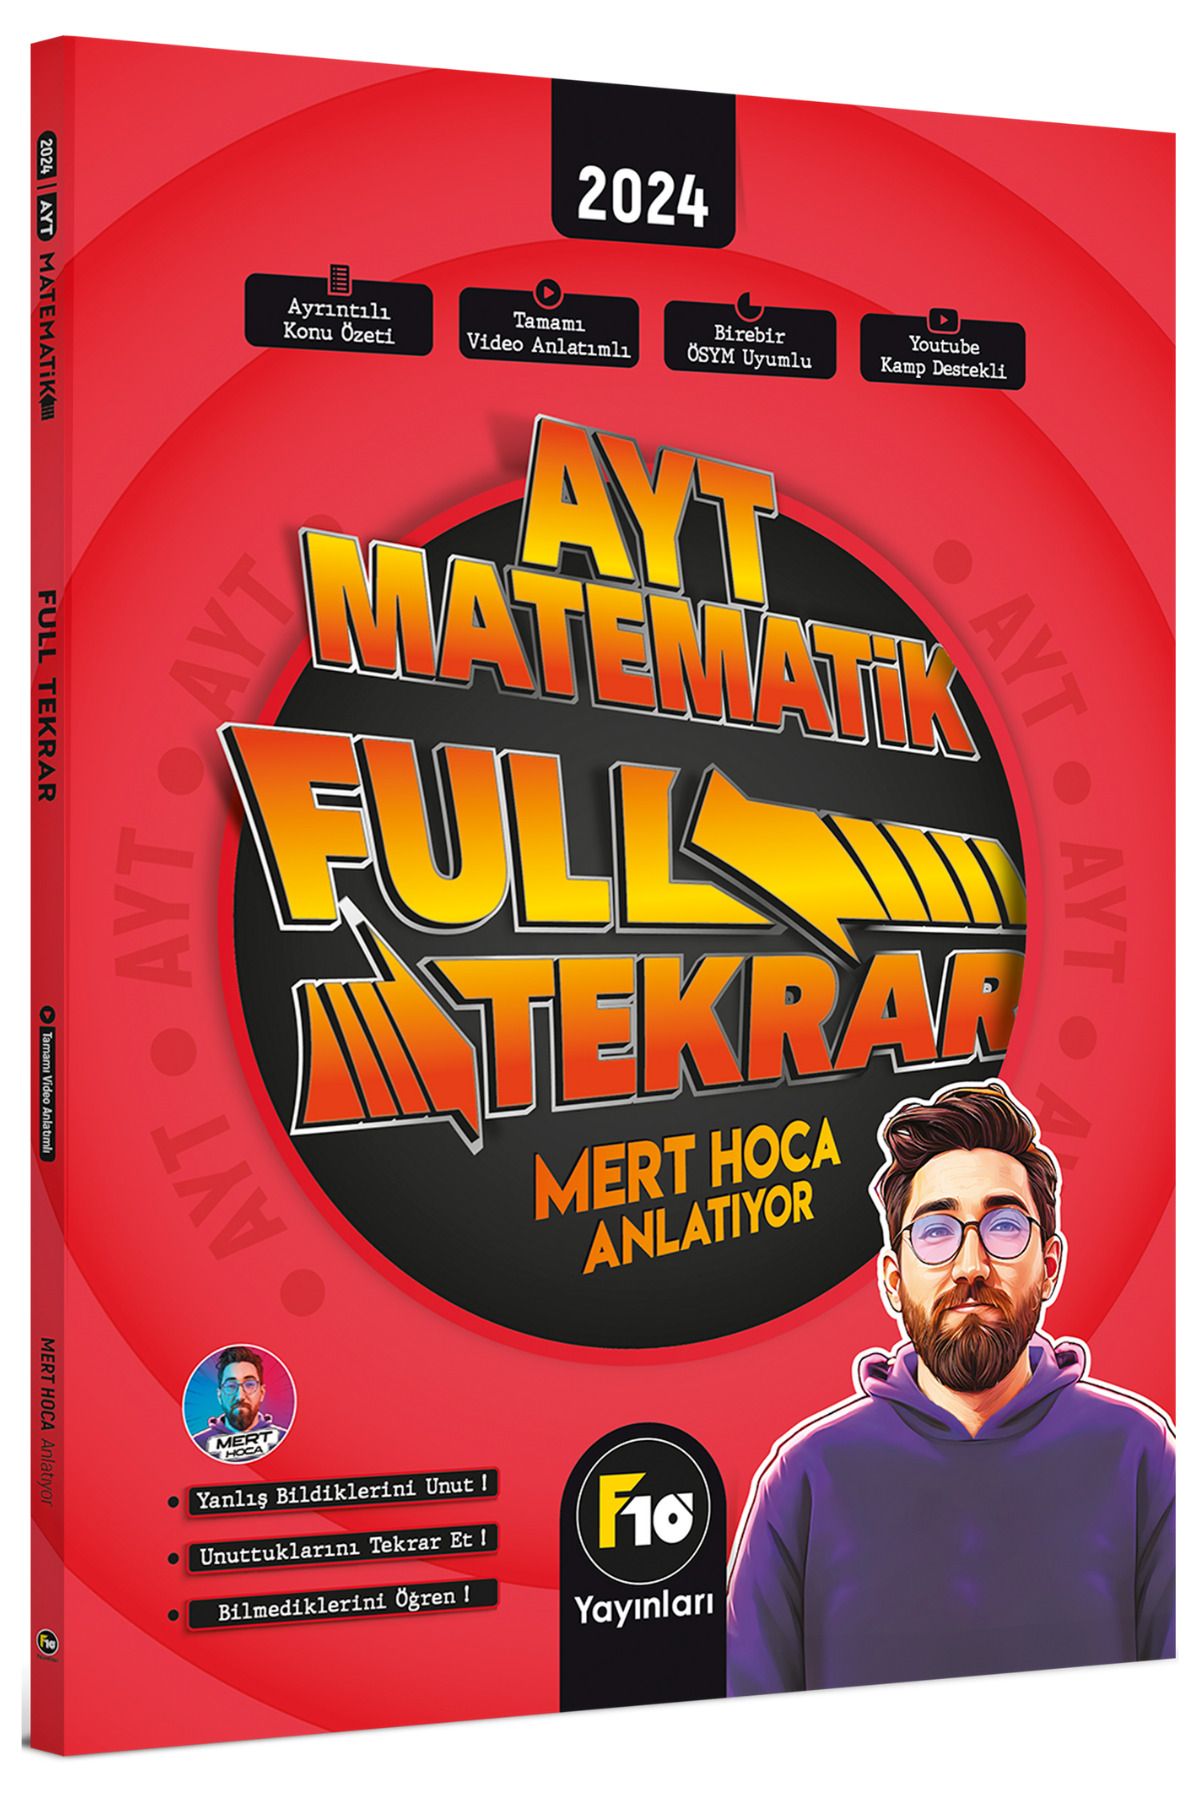 F10 Yayınları Mert Hoca Ayt Matematik Full Tekrar Video Ders Kitabı